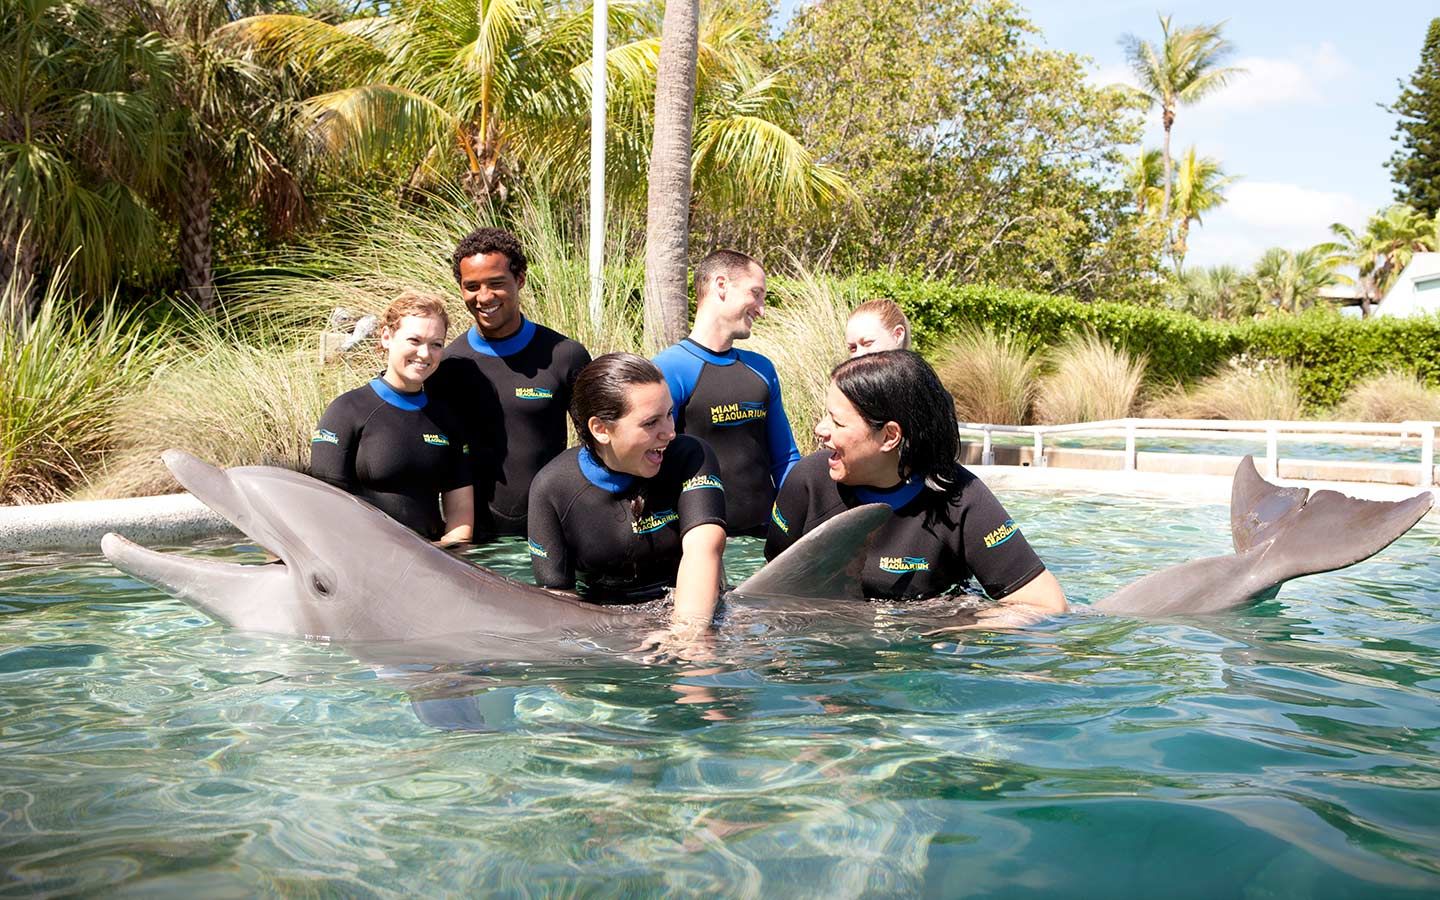 Especial de Parques: ¿Nadar con delfines? en el Miami Seaquarium puedes hacerlo